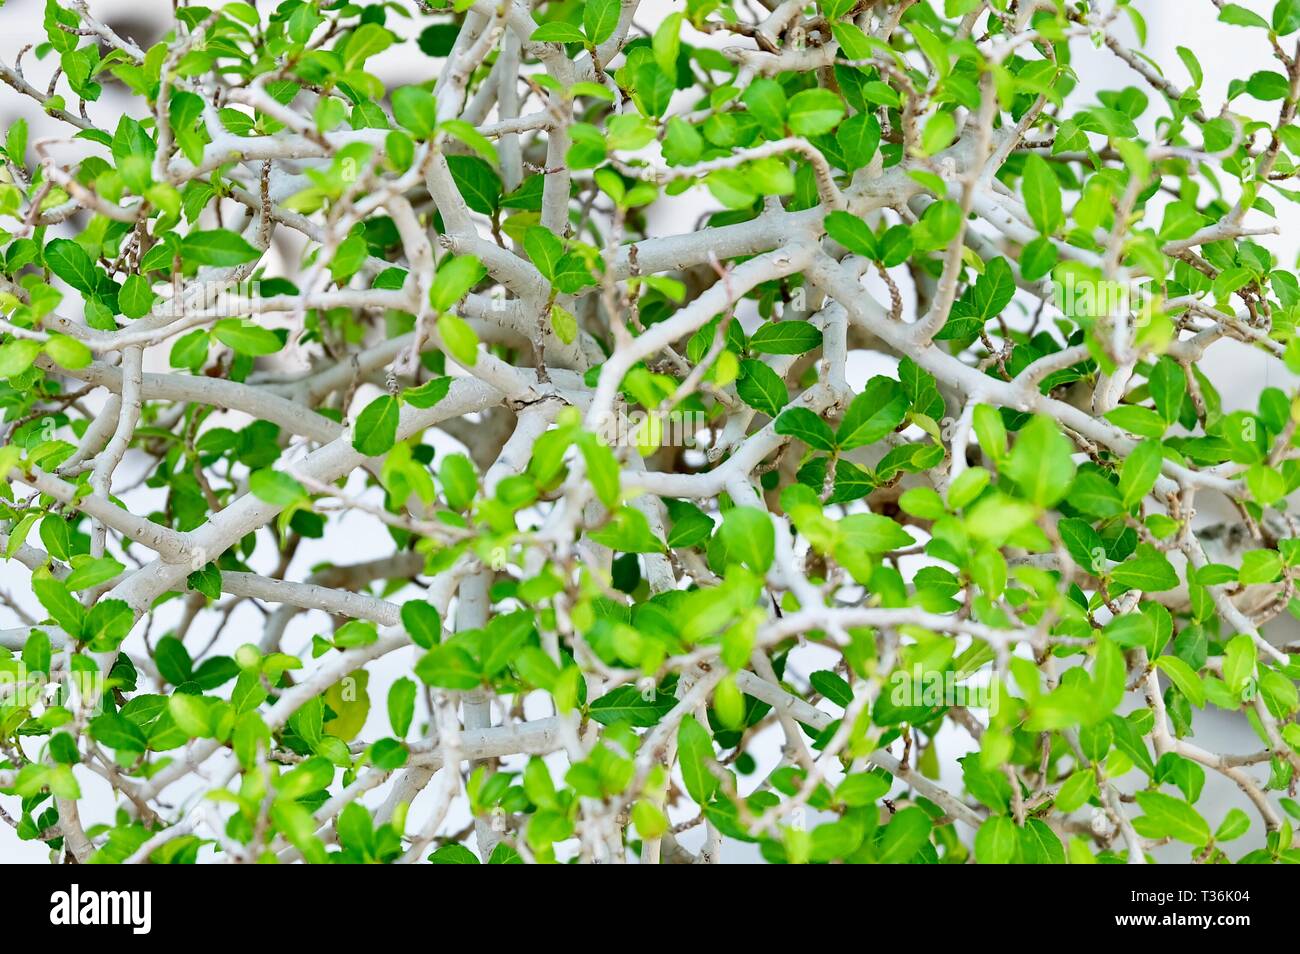 Motif de fond, de belles feuilles vertes Résumé mur de Streblus Asper, Siamois Bois ou arbre brosse à dents arrière-plan. Banque D'Images